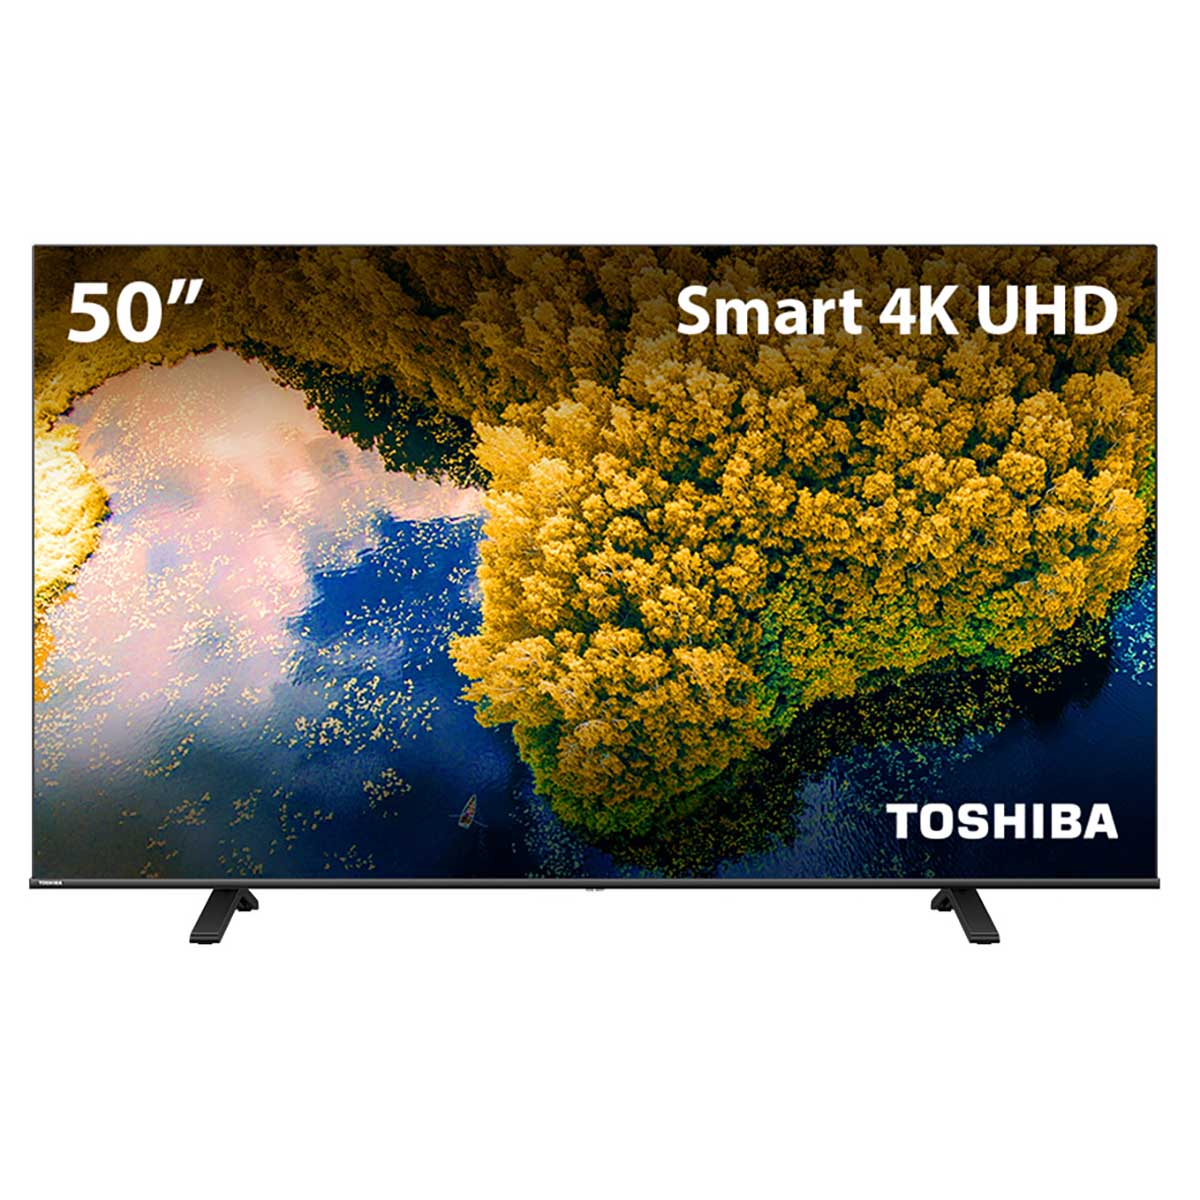 Smart TV Toshiba DLED 50'' 4K 50C350LS VIDAA 3 HDMI 2 USB Wi-Fi - TB012M